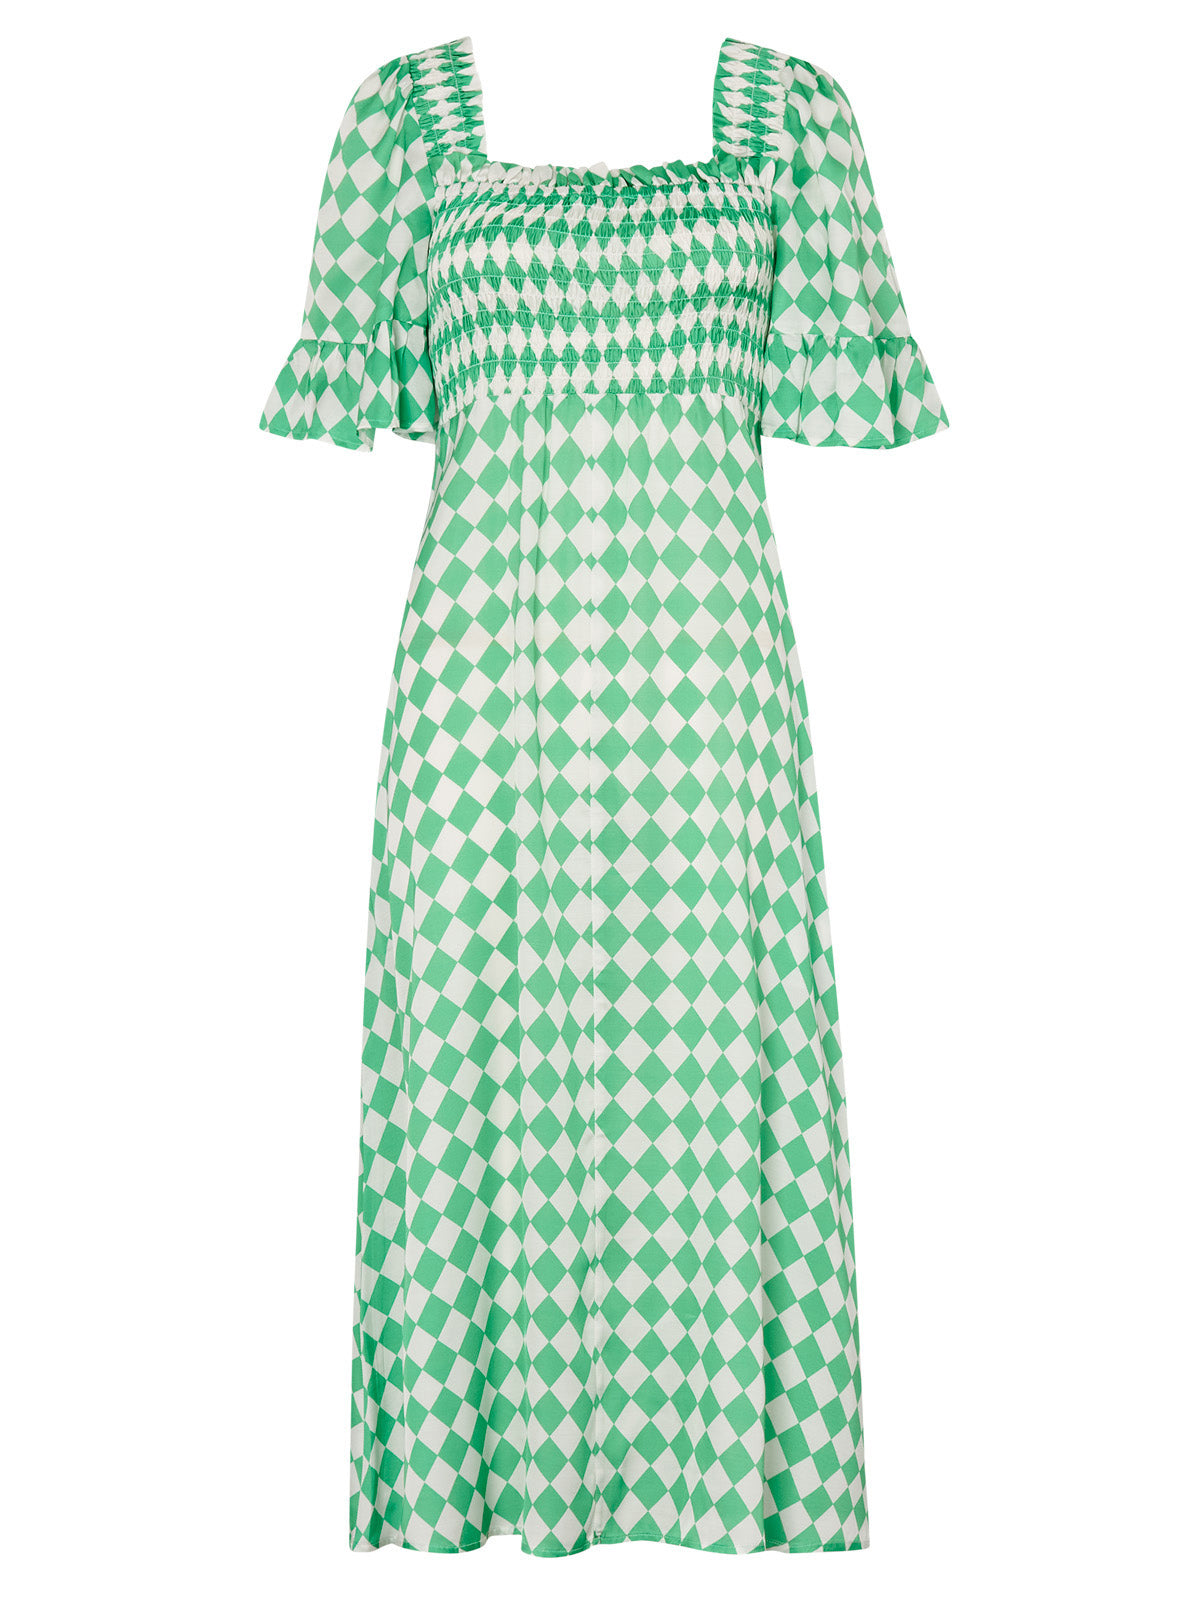 Arabella Green Checker Dress | KITRI Studio